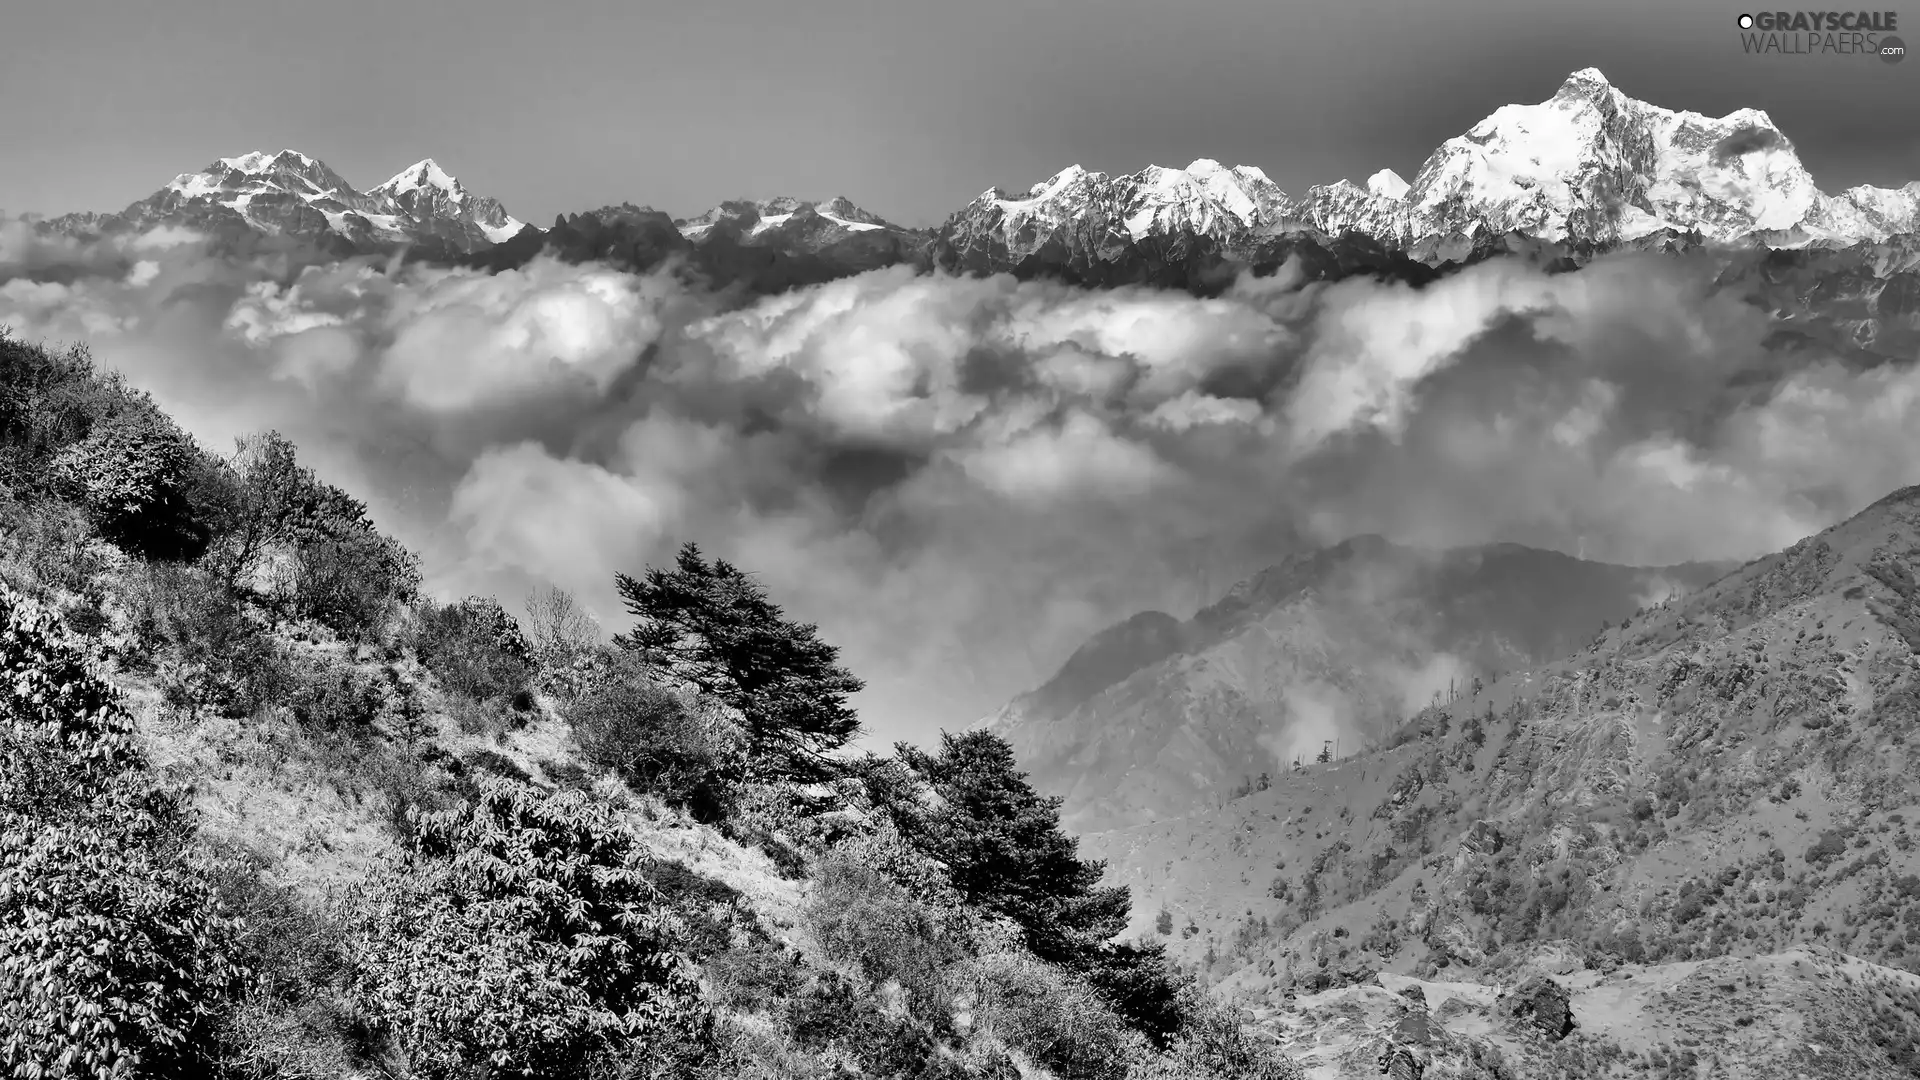 Himalayas, clouds, Mountains